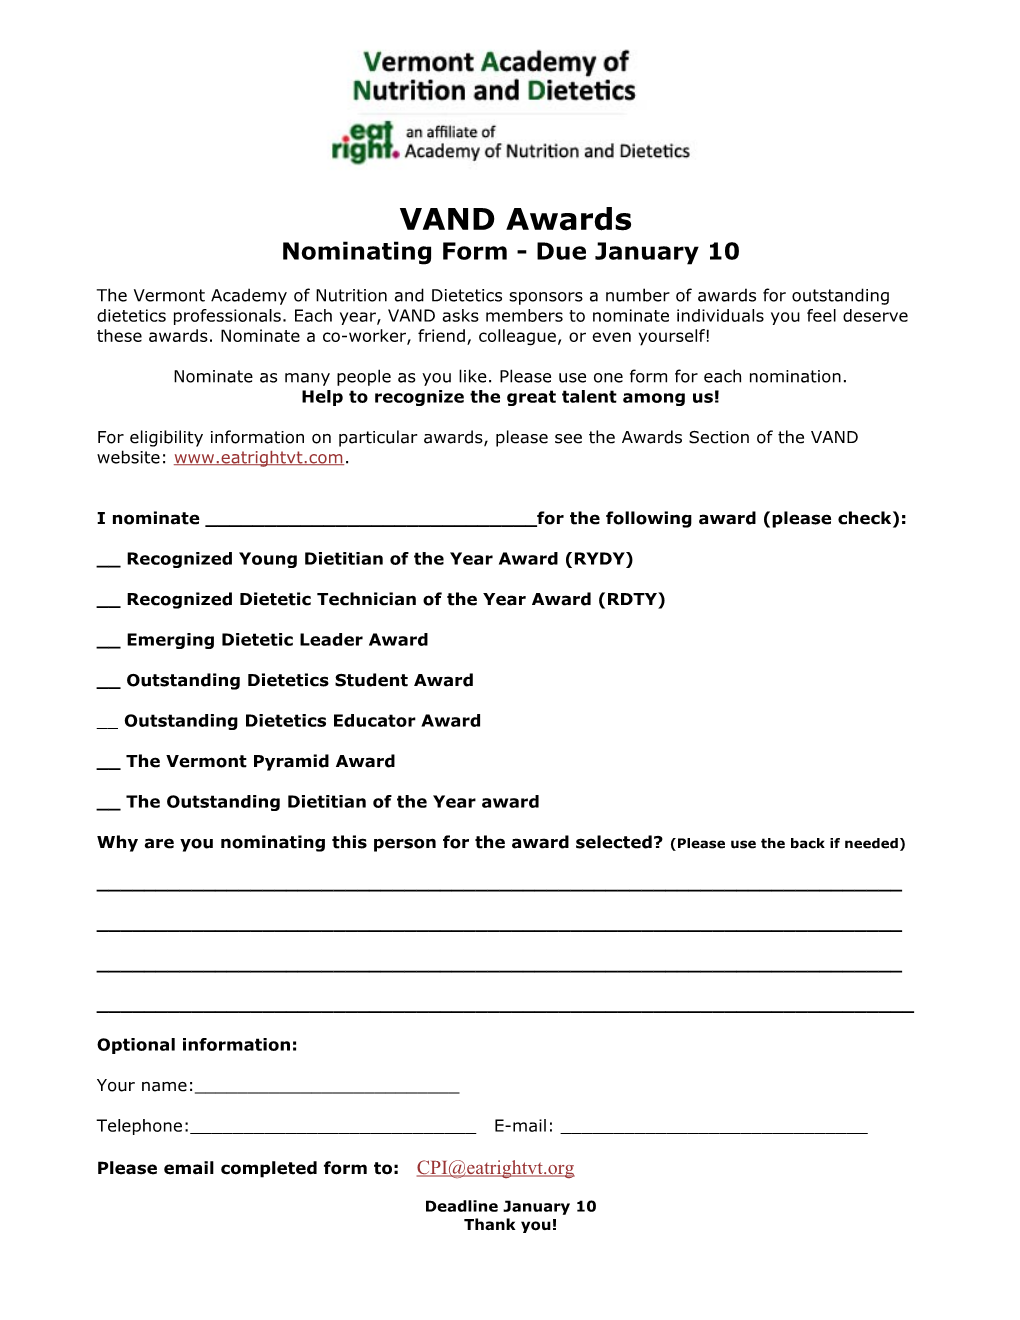 VDA Awards Nominating Form